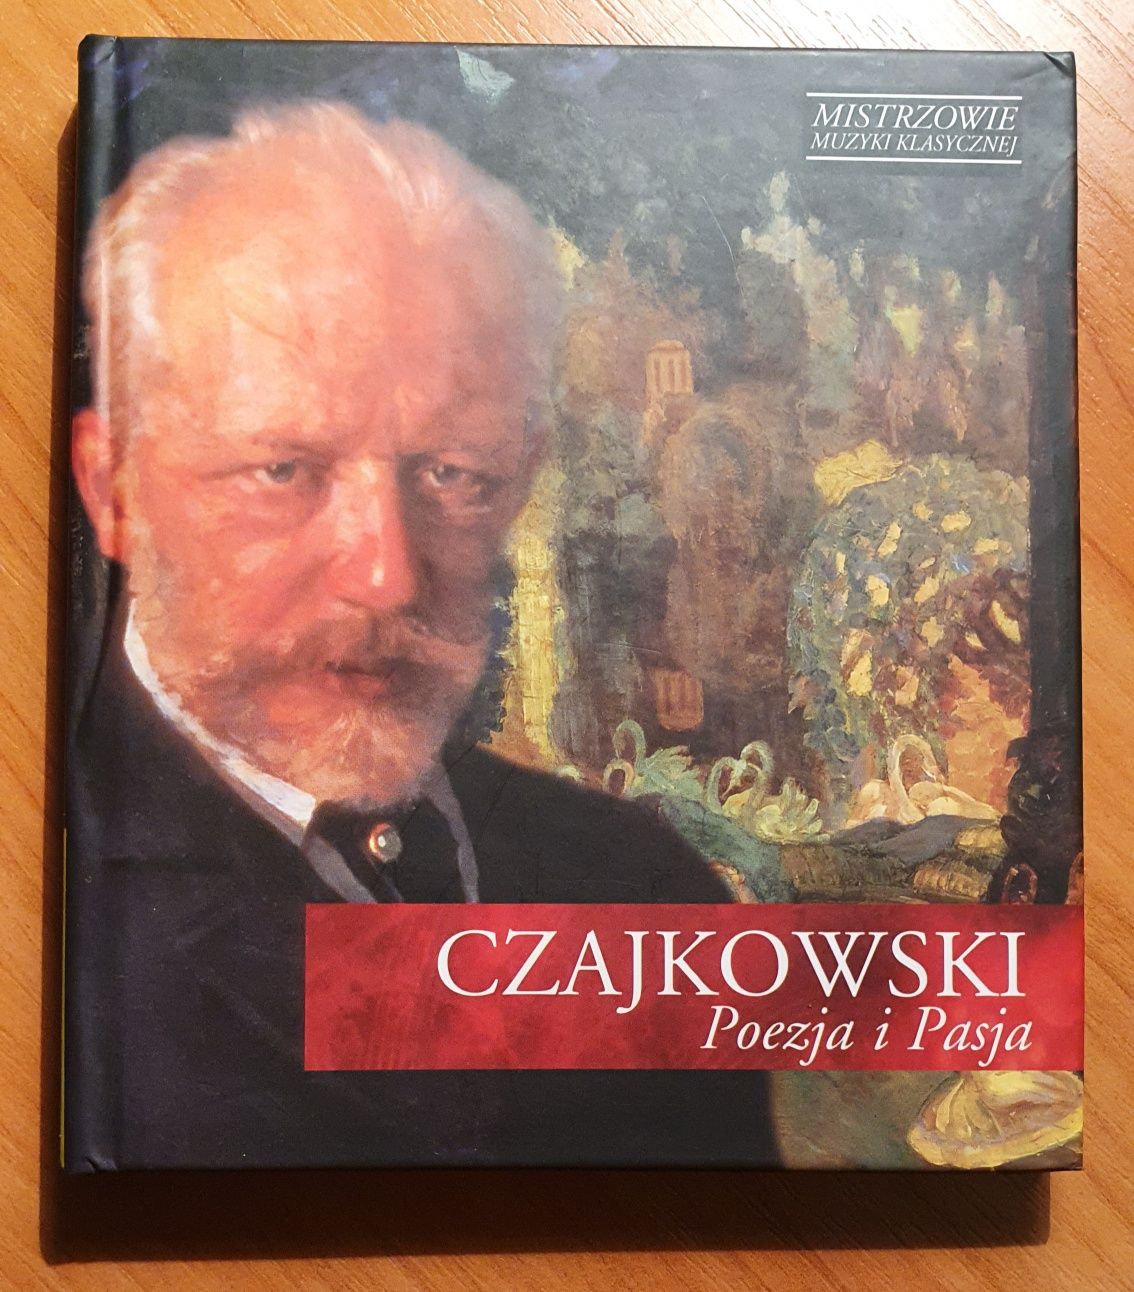 Mistrzowie muzyki klasycznej Czajkowski Poezja i Pasja CD